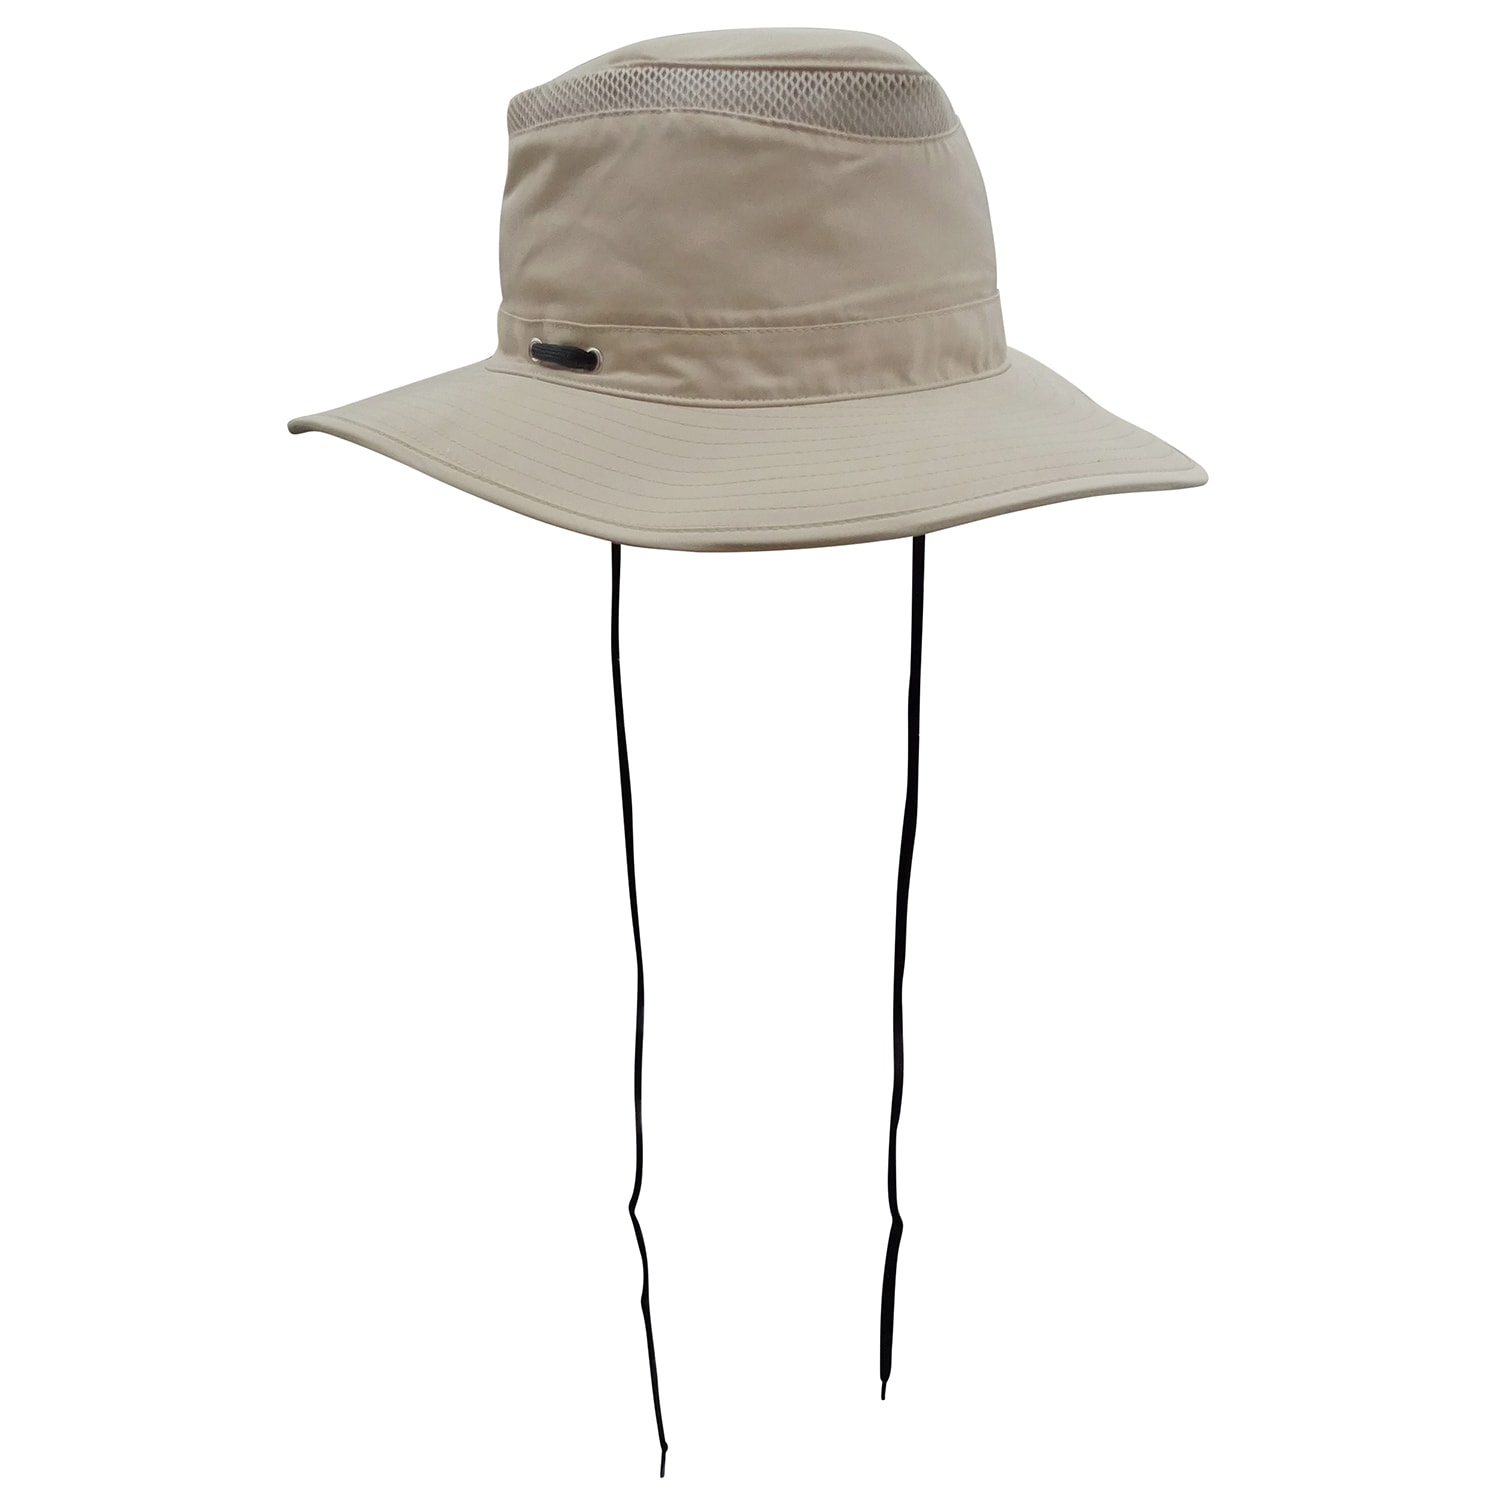 8 By YOOX CORDUROY WIDE BRIM BUCKET HAT, Camel Women's Hat